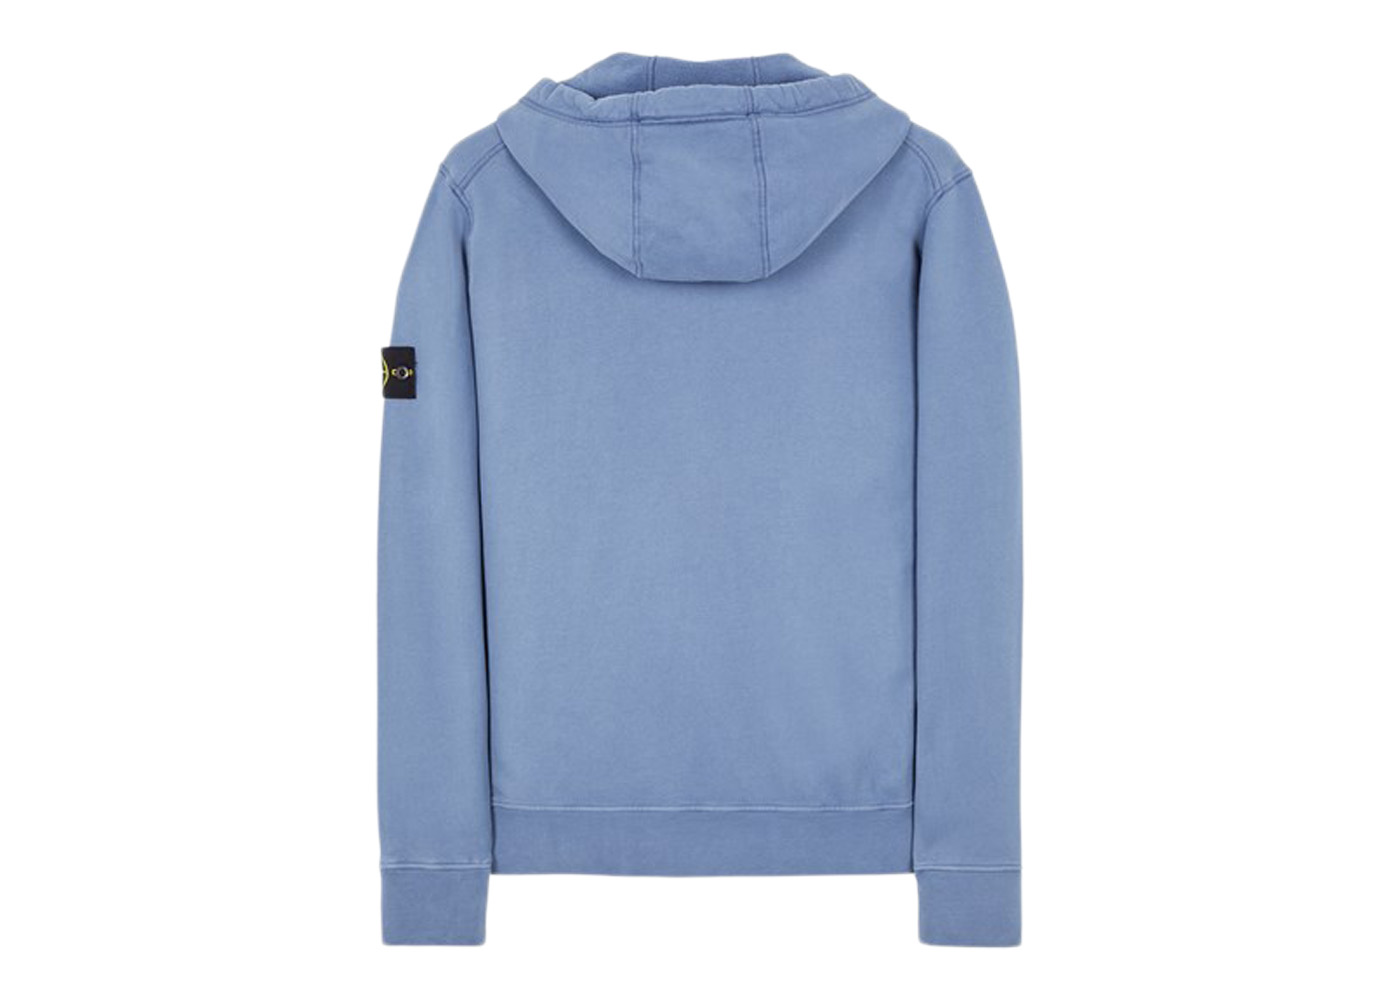 Stone Island 64220 Brushed Cotton Fleece Zip Up Hooded Sweatshirt 